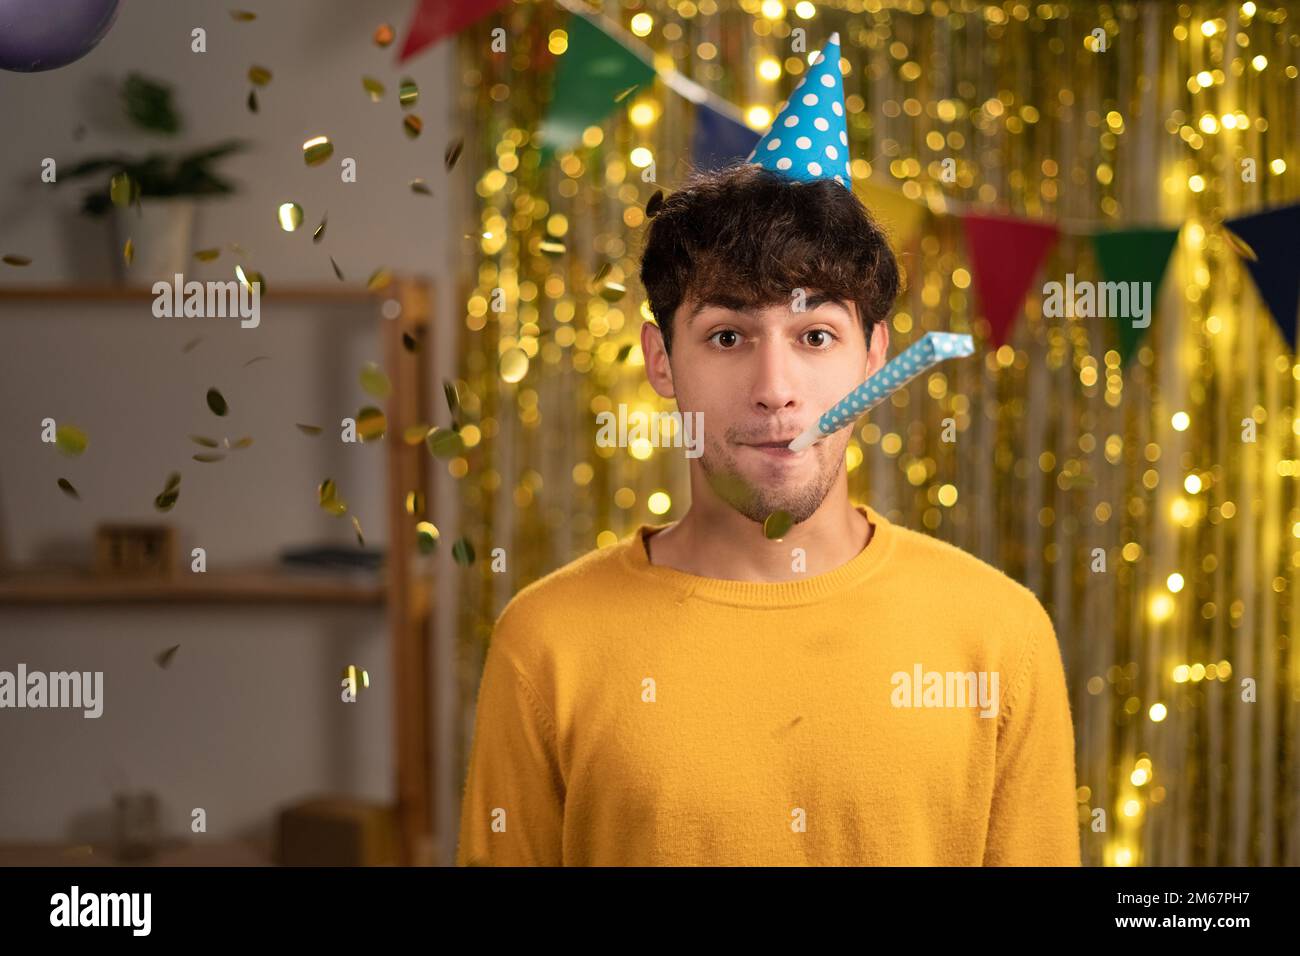 Ein hübscher junger arabischer Mann im Pullover bläst zu Hause Party Horn, feiert Geburtstag, hat selbstbewussten Ausdruck. Stockfoto